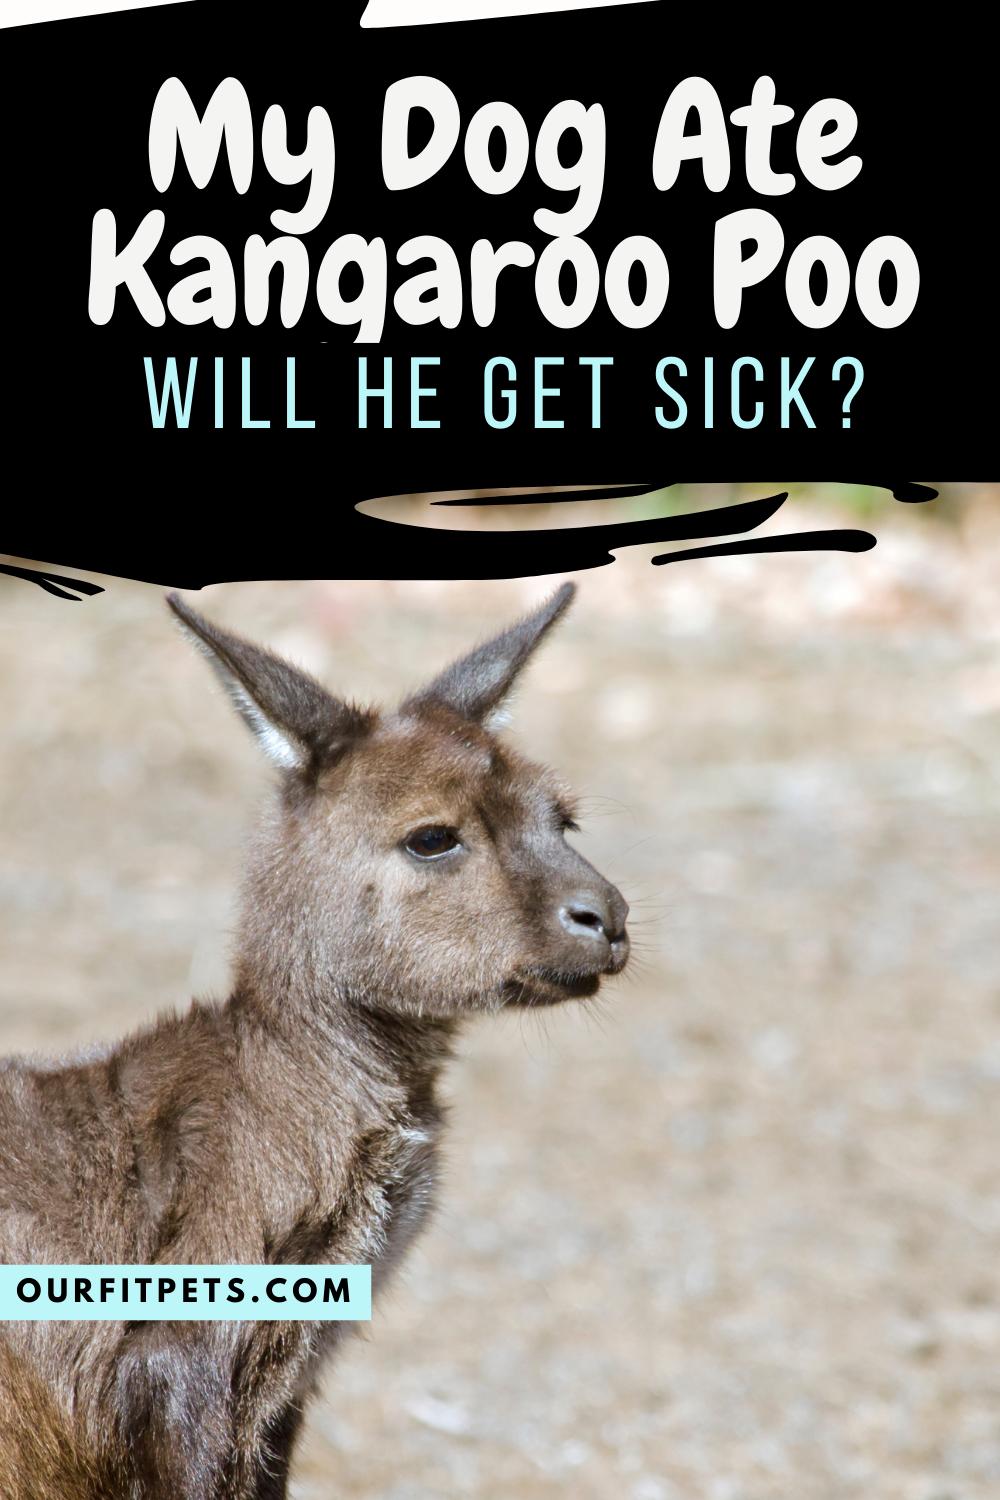 Can you get sick from kangaroo Poo?